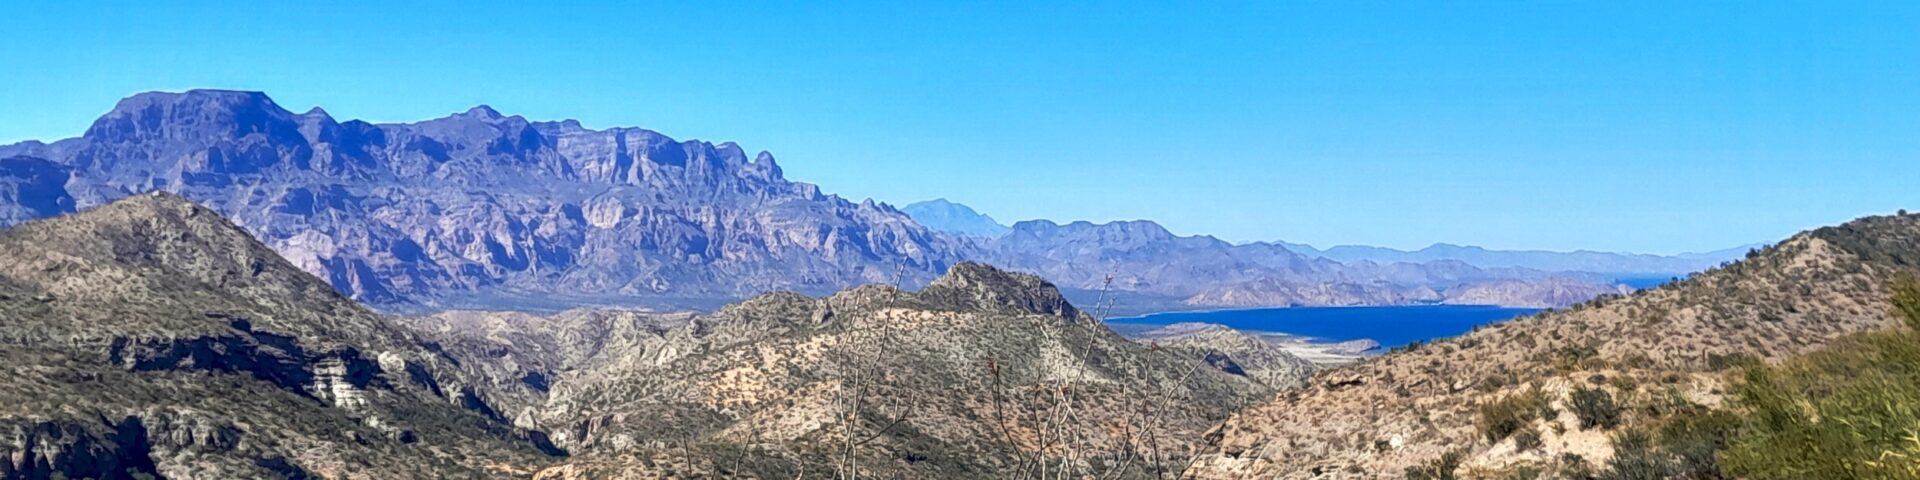 Sierra de La Giganta, Baja California Süd, Mexiko, Februar 2021